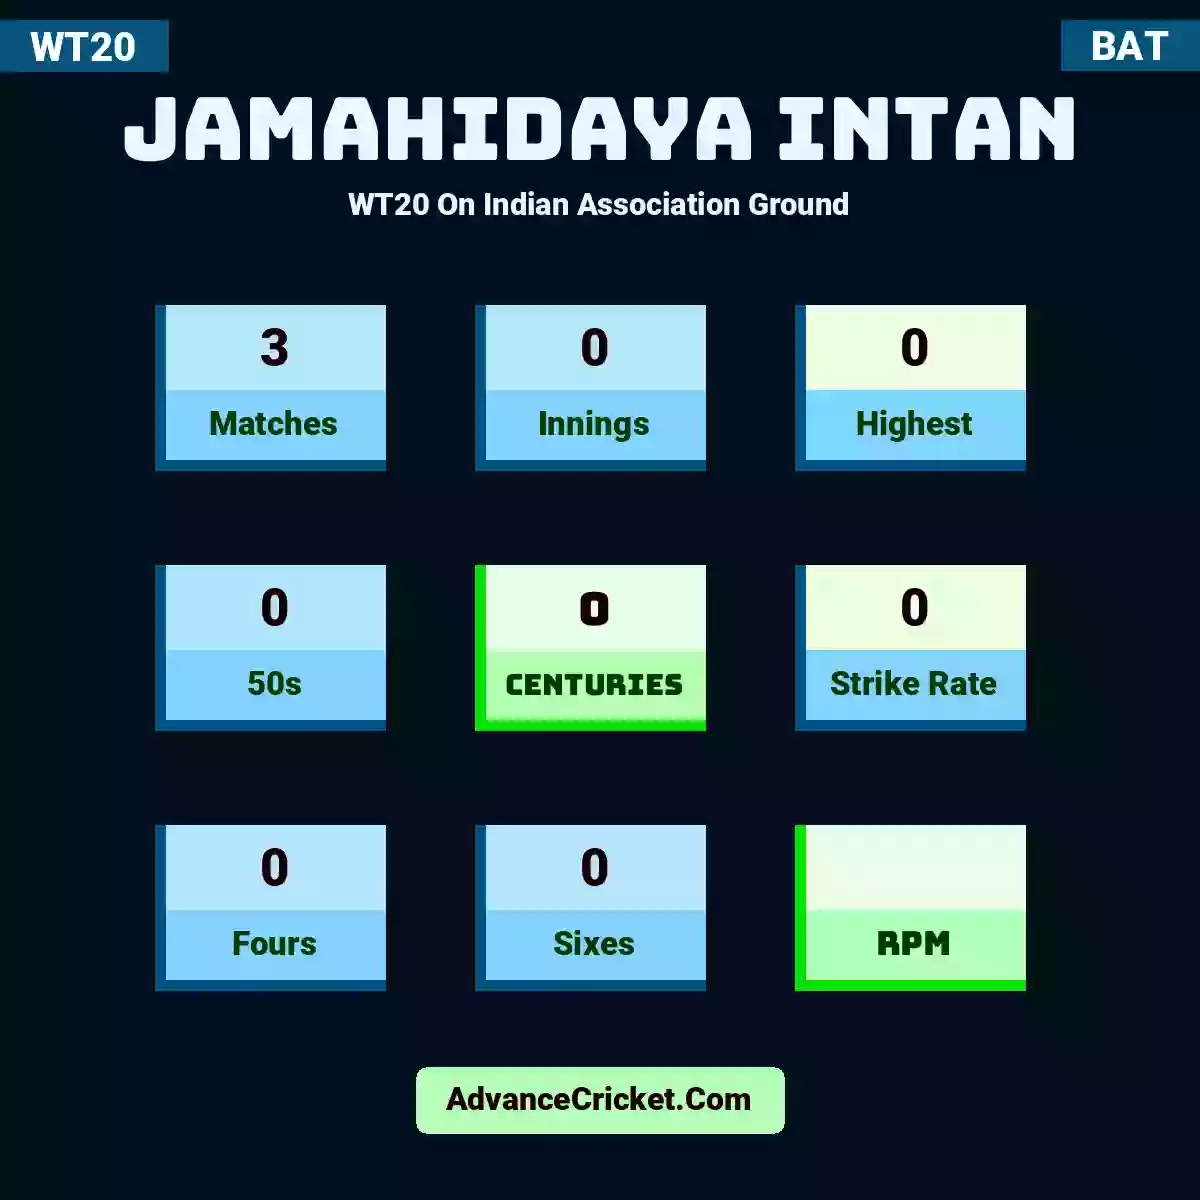 Jamahidaya Intan WT20  On Indian Association Ground, Jamahidaya Intan played 3 matches, scored 0 runs as highest, 0 half-centuries, and 0 centuries, with a strike rate of 0. J.Intan hit 0 fours and 0 sixes.